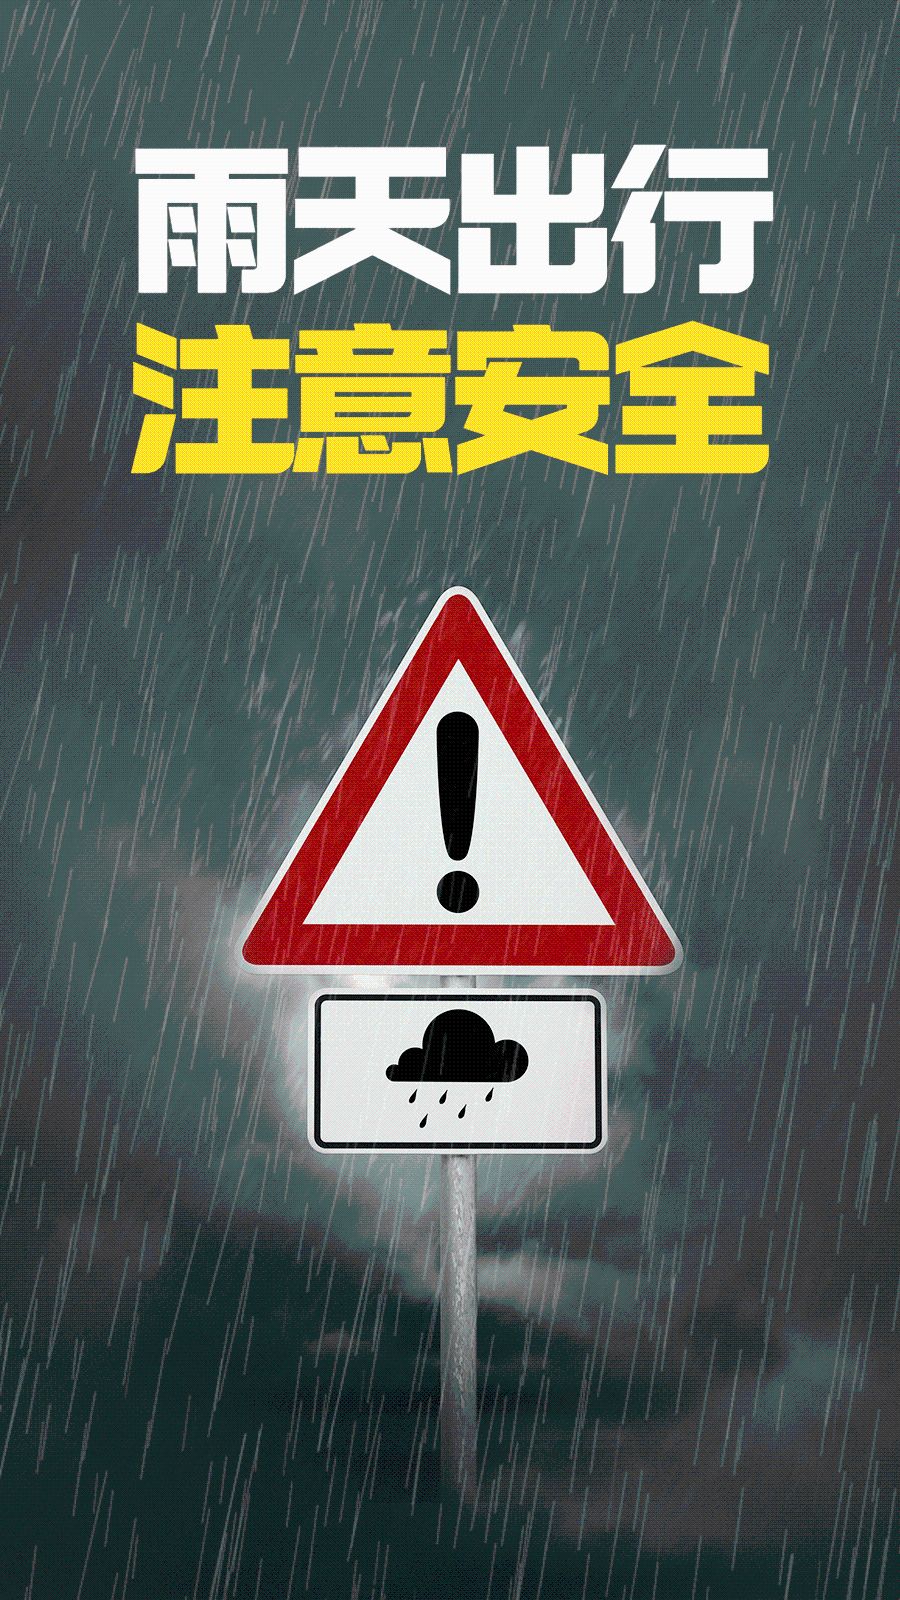 注意雨天带来的安全隐患哦!还要小心路滑出门不仅要记得带伞